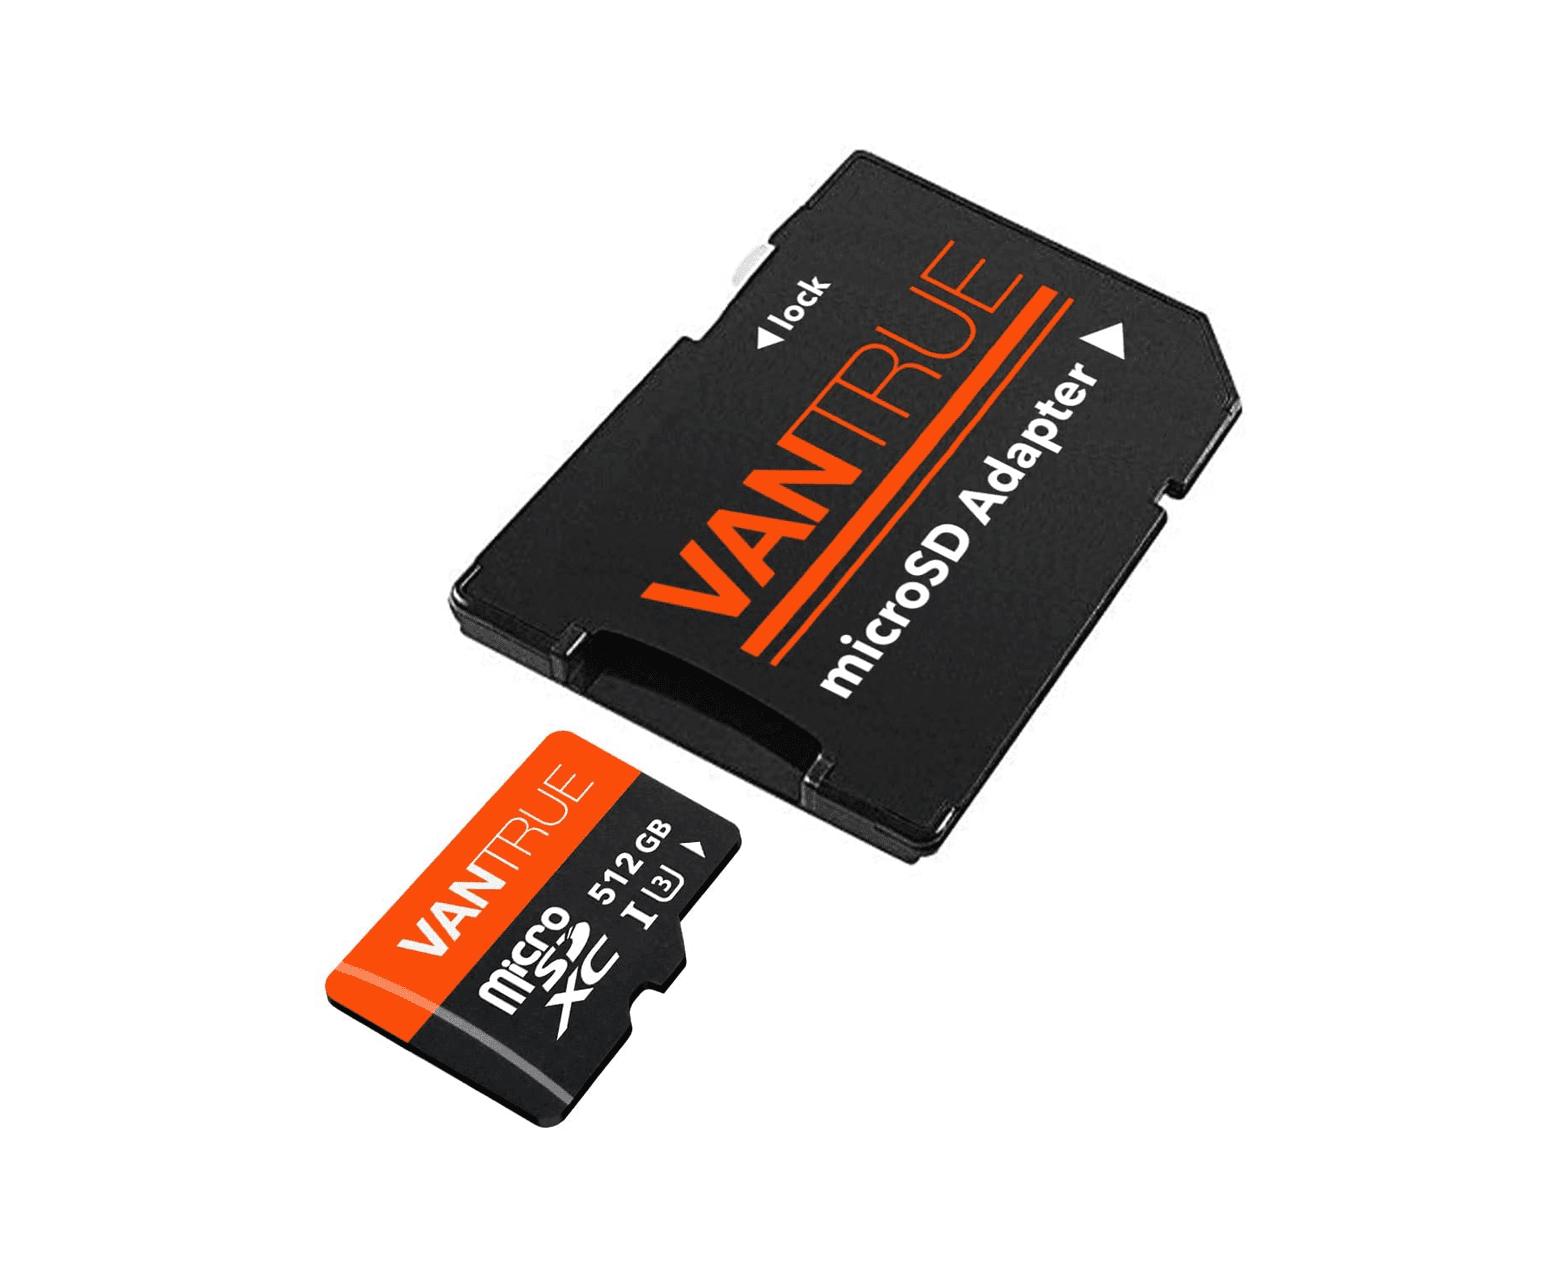 Carte SD Vantrue 512 Go